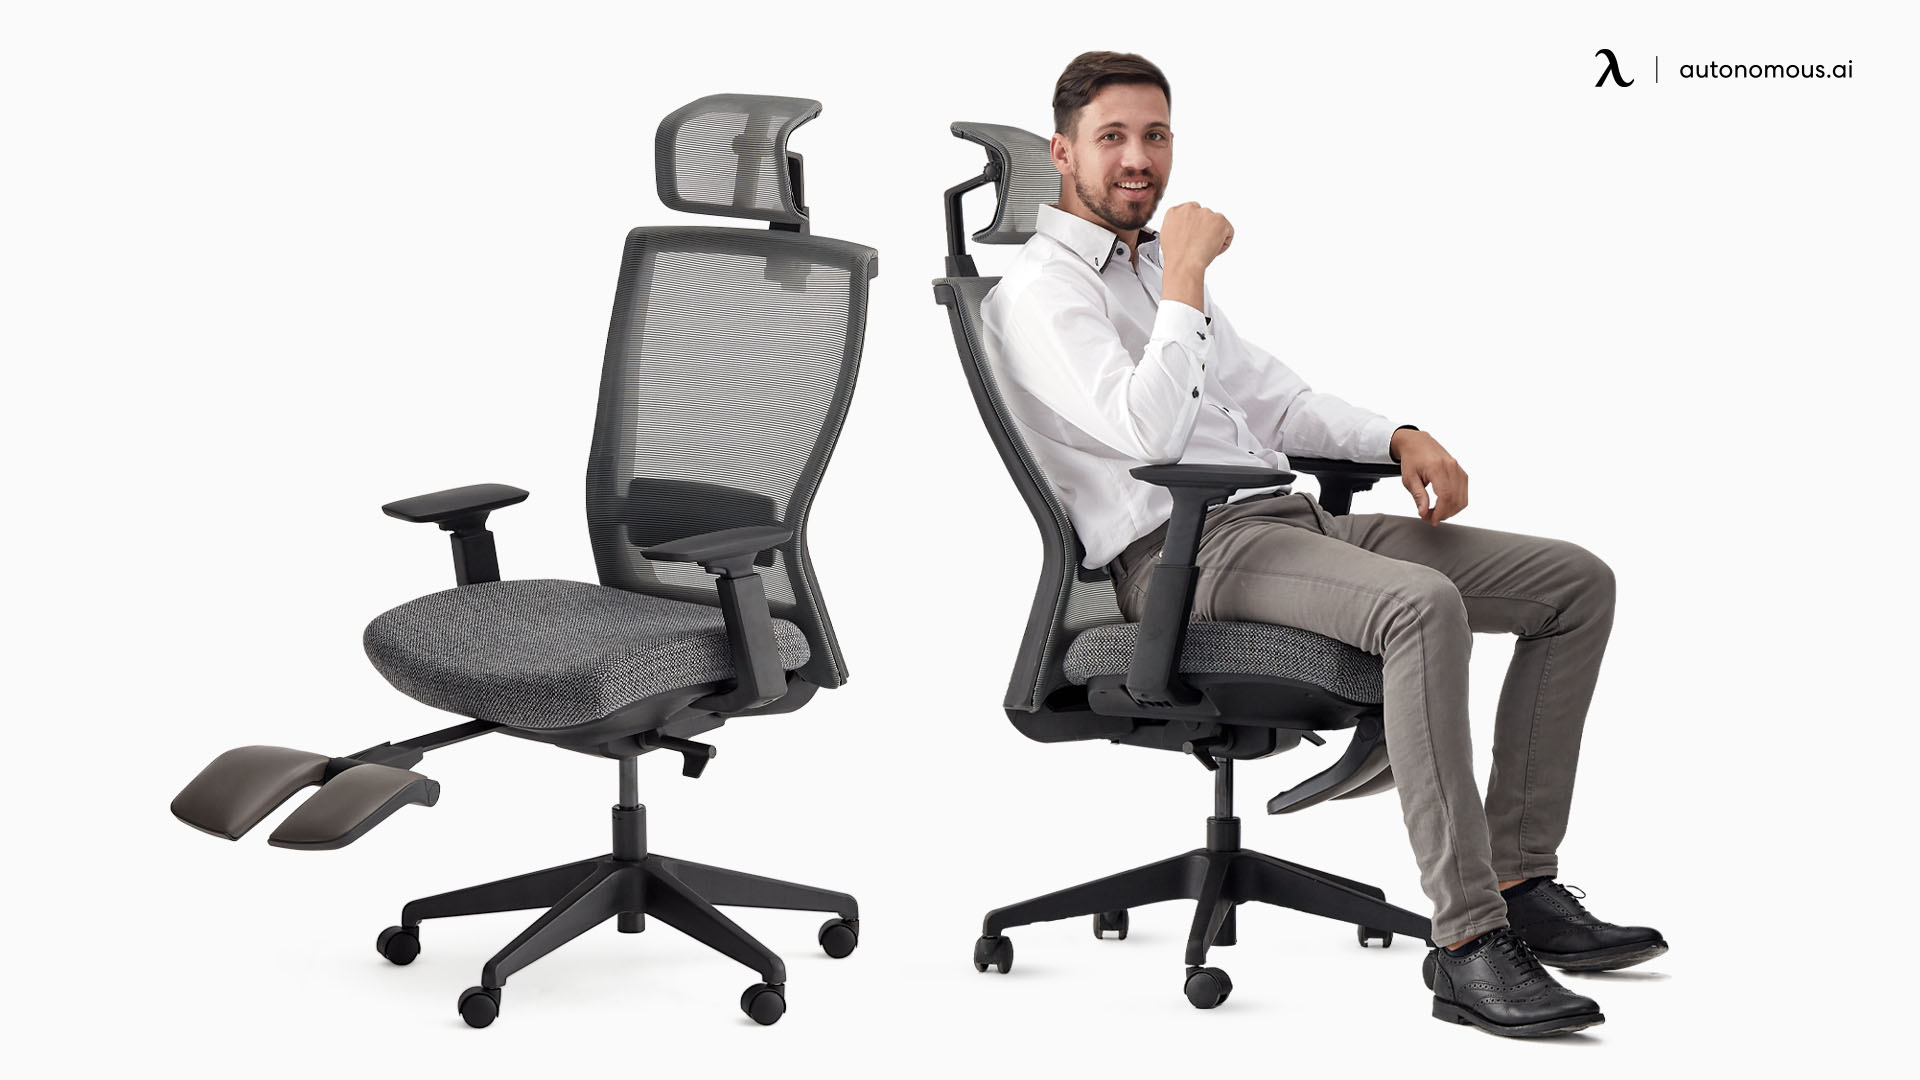 ErgoChair Recline 24-hour chair